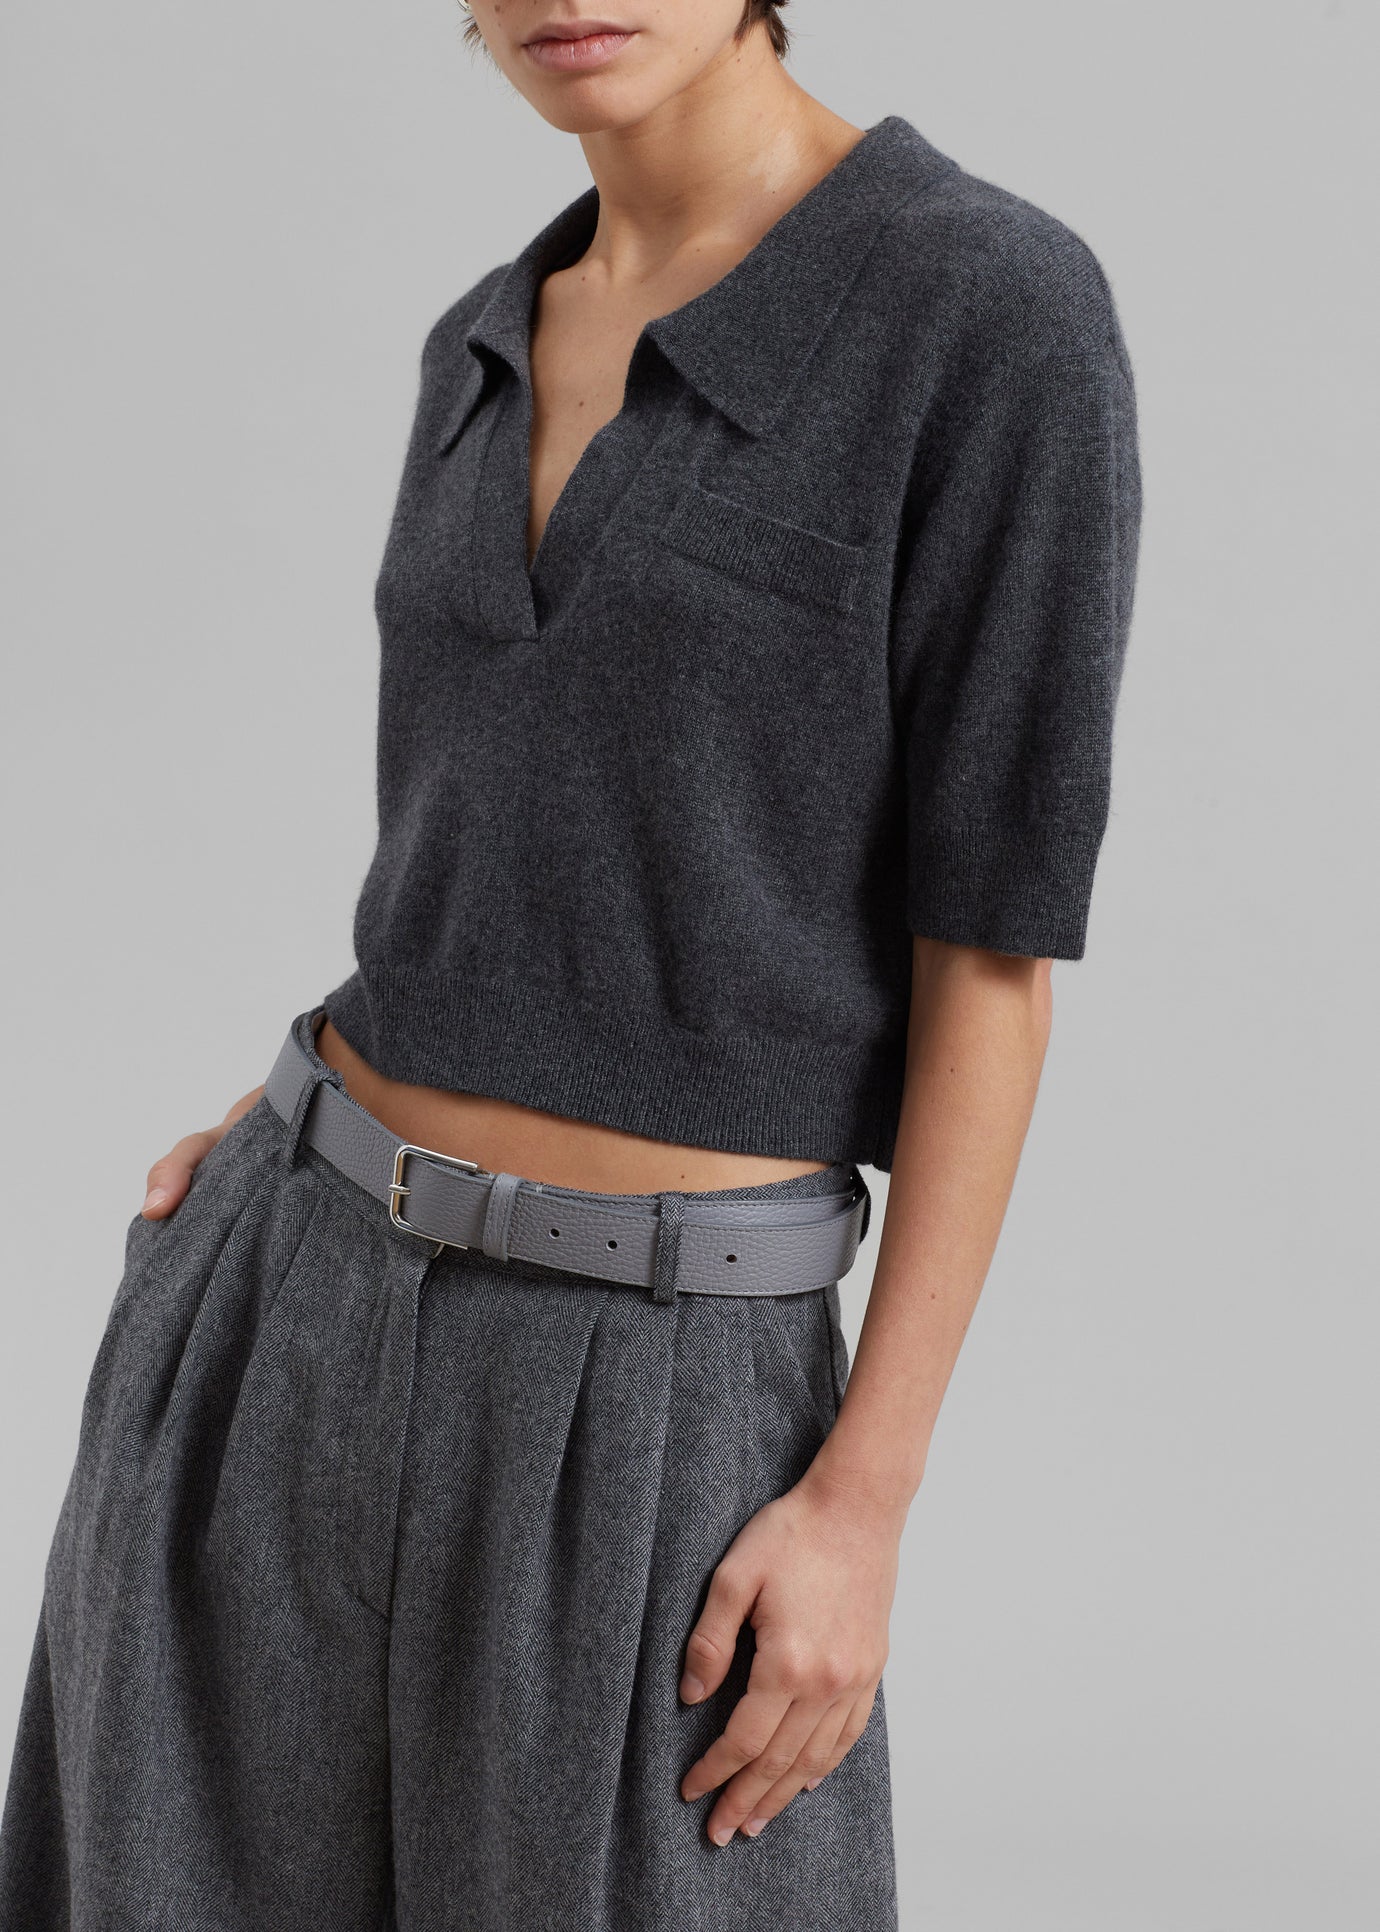 The Garment Piemonte Cropped Sweater - Grey Melange - 1